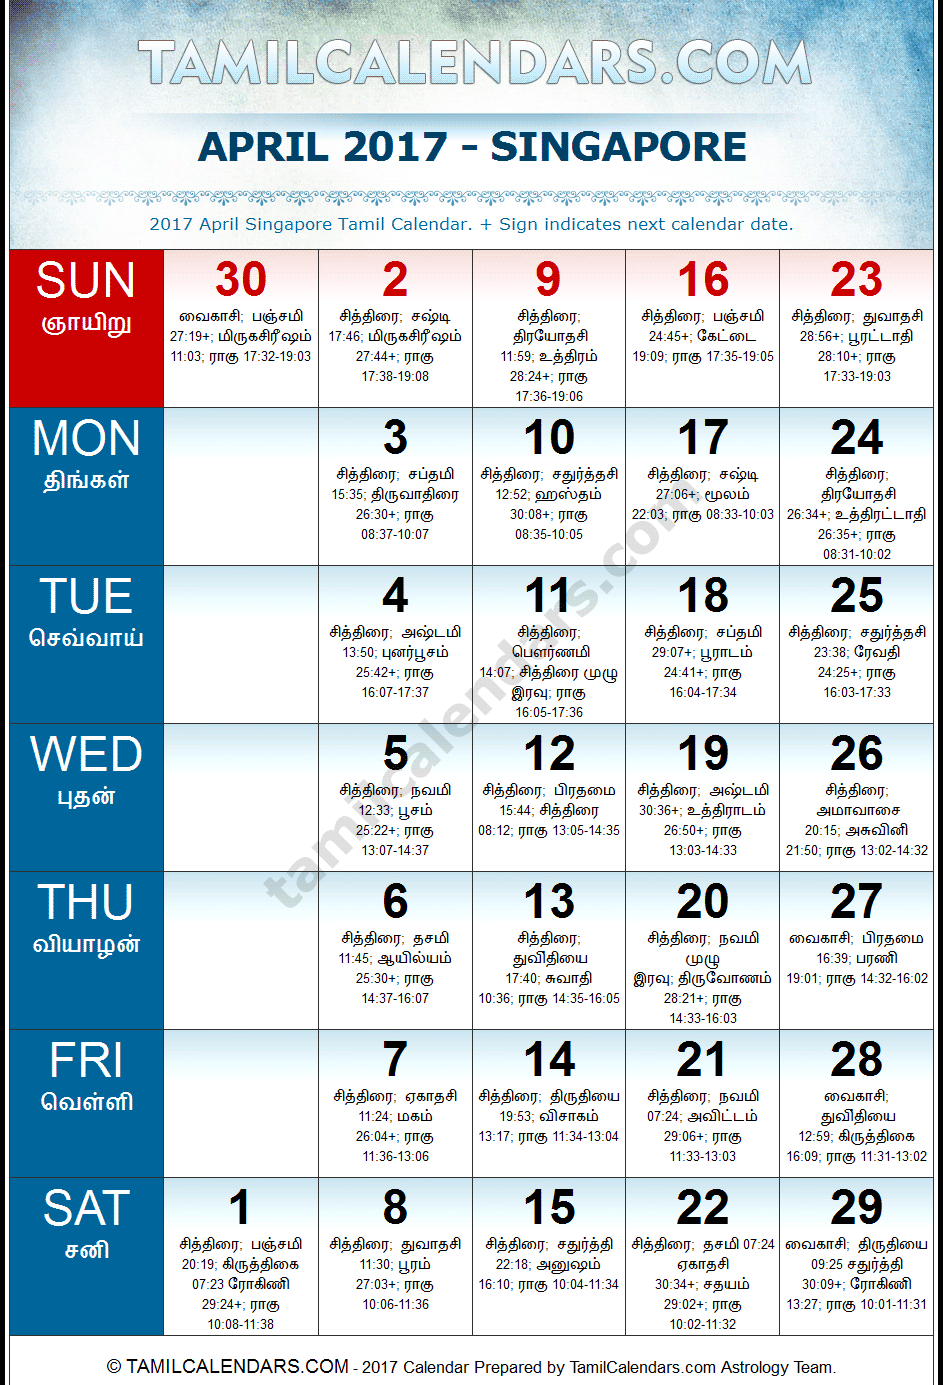 April 2017 Tamil Calendar for Singapore